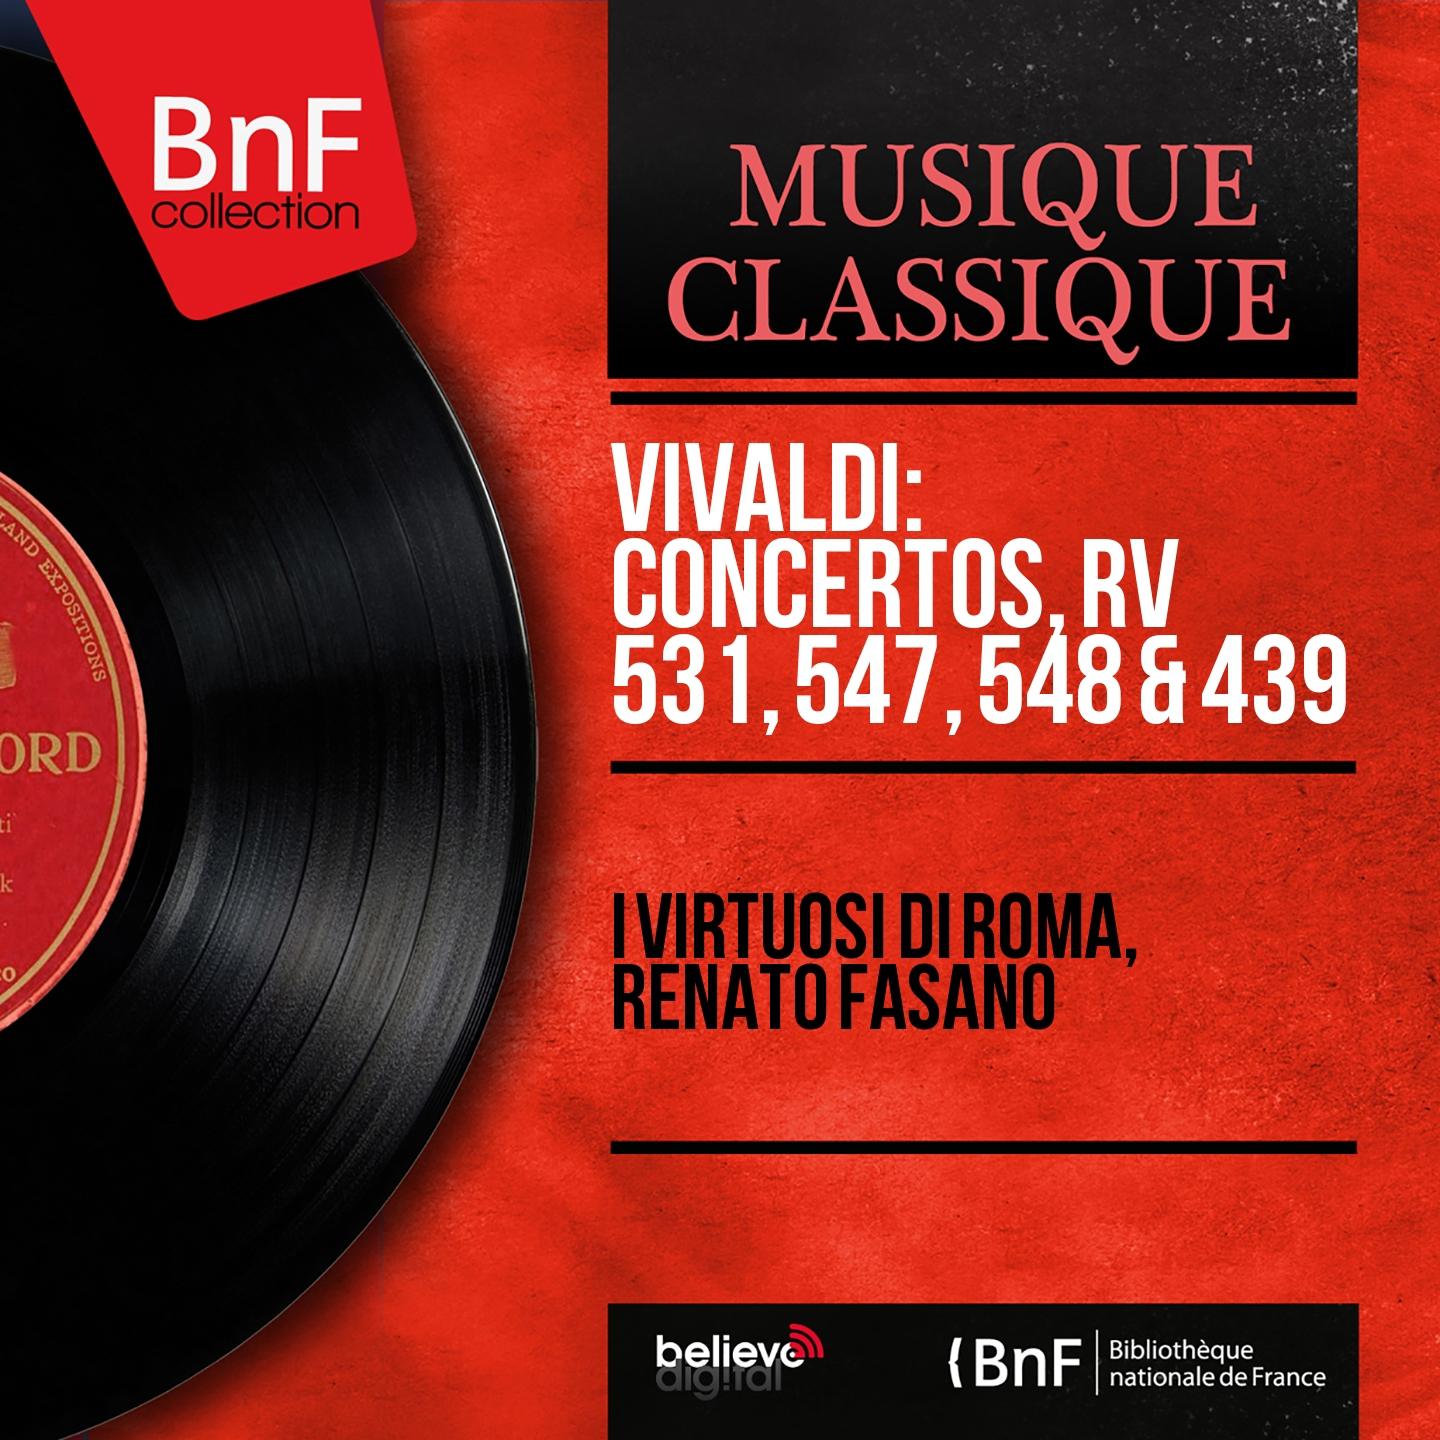 Concerto for Violin and Viola in B-Flat Major, RV 547: III. Allegro molto